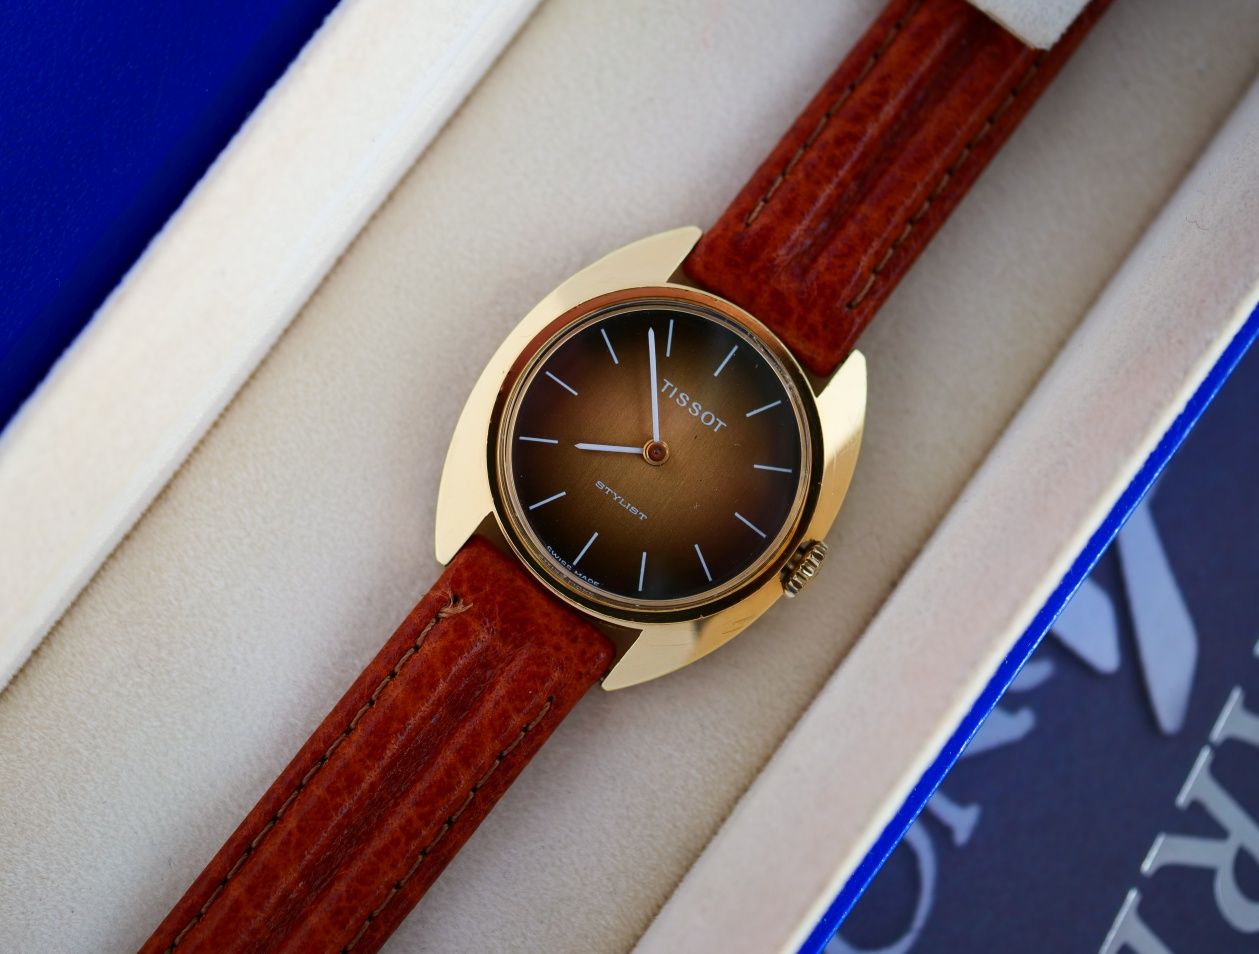 Tissot zegarek szwajcarski swiss made vintage stary mechaniczny cudo